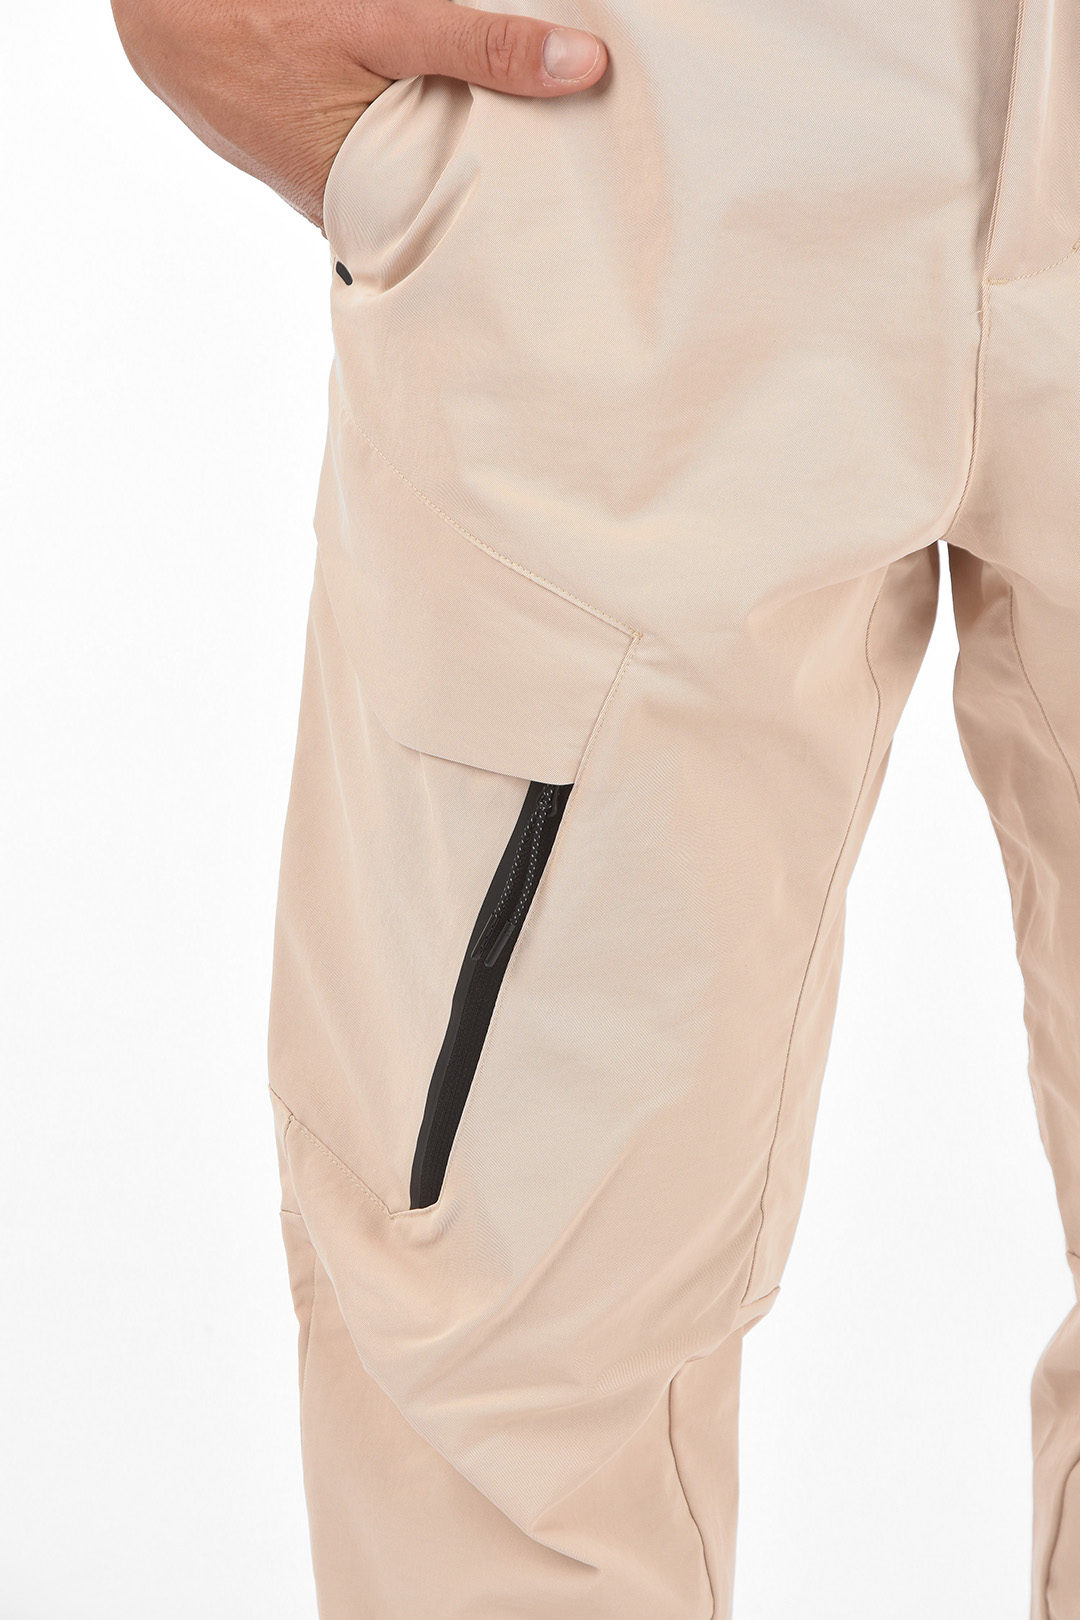 Klem Symposium Hertog Nike Standard fit Cargo Pants men - Glamood Outlet